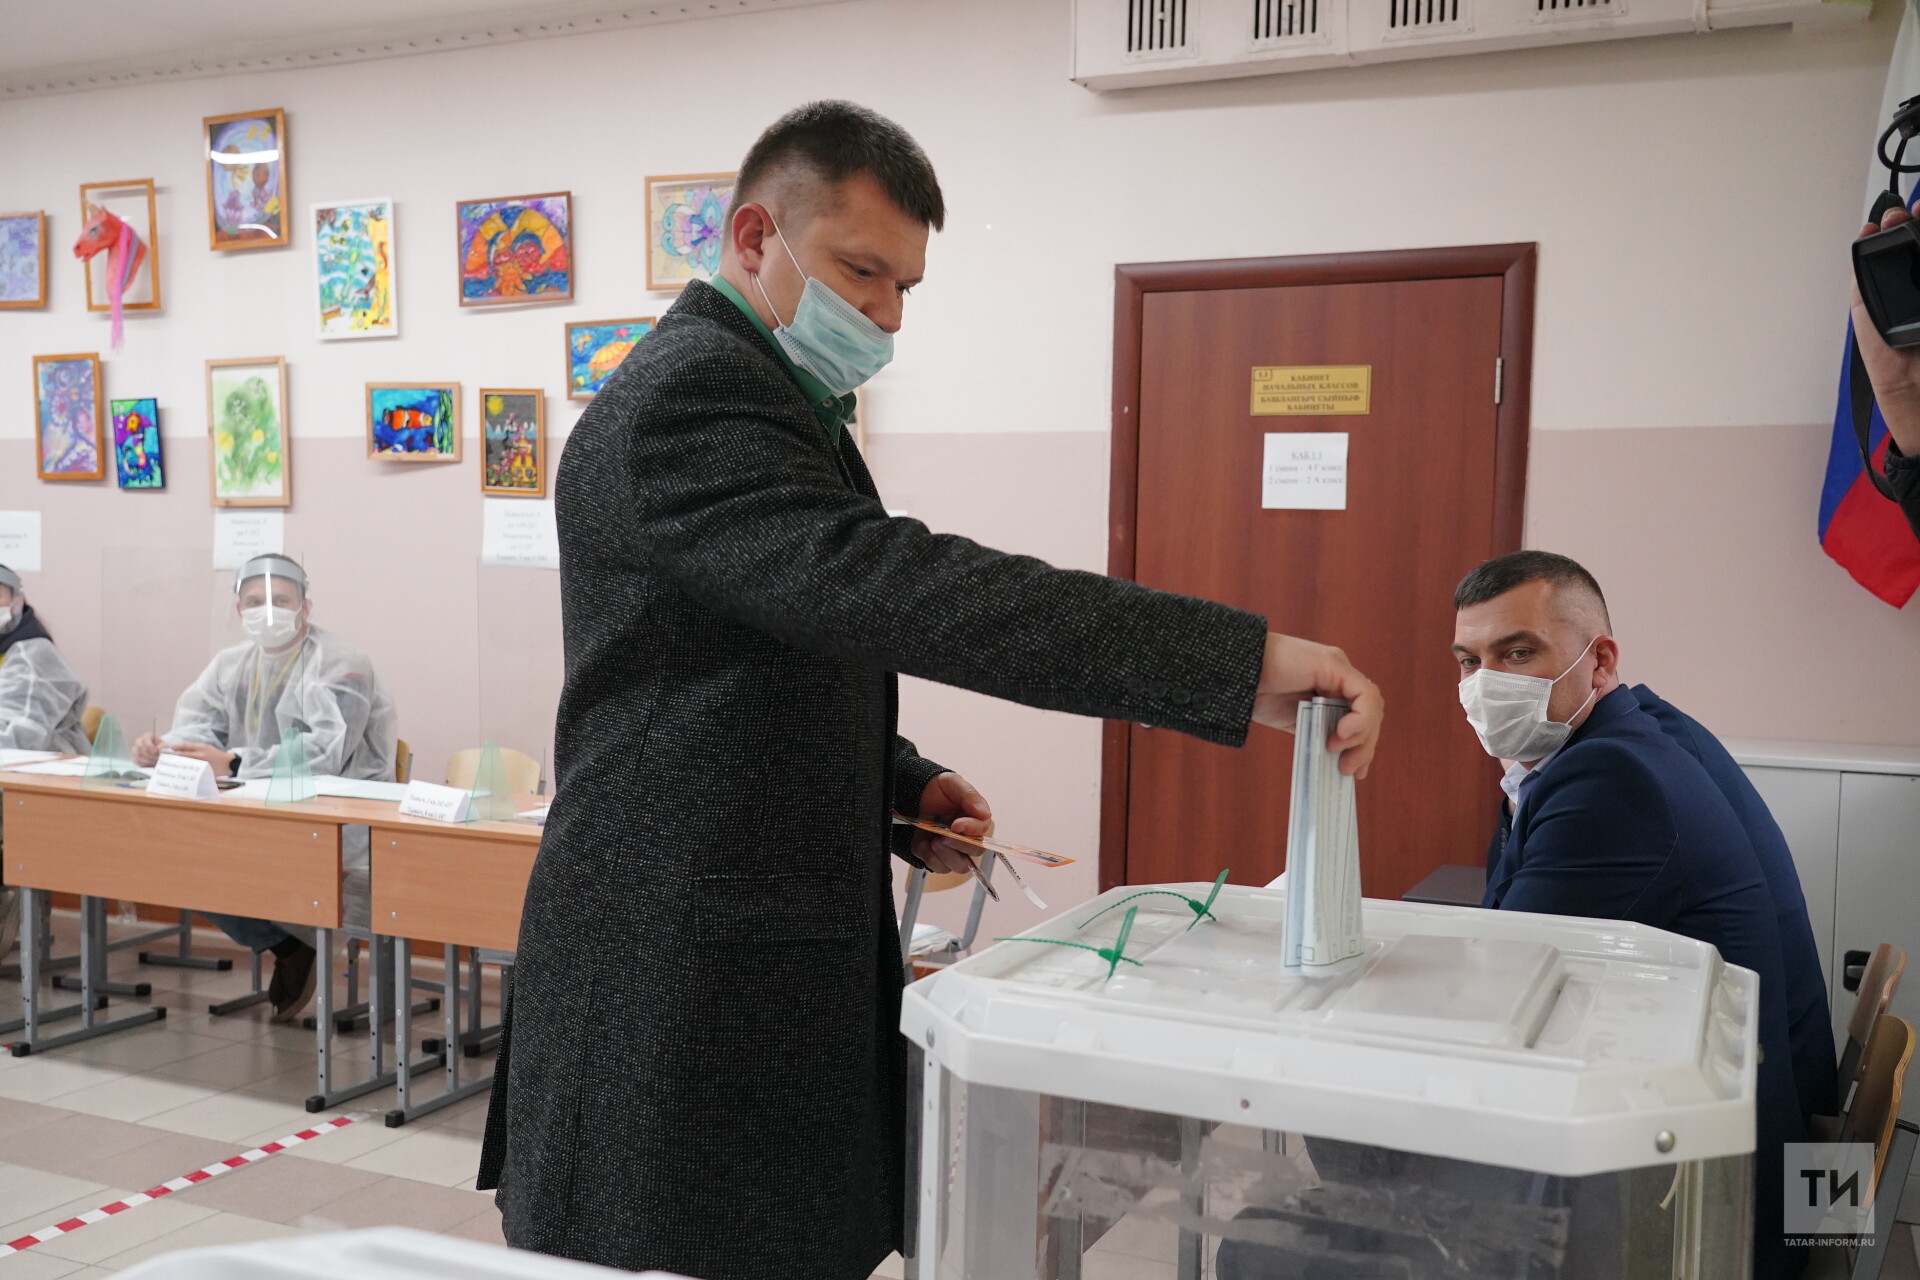 Лидер партии ЛДРП в Татарстане Владимир Сурчилов проголосовал на думских выборах